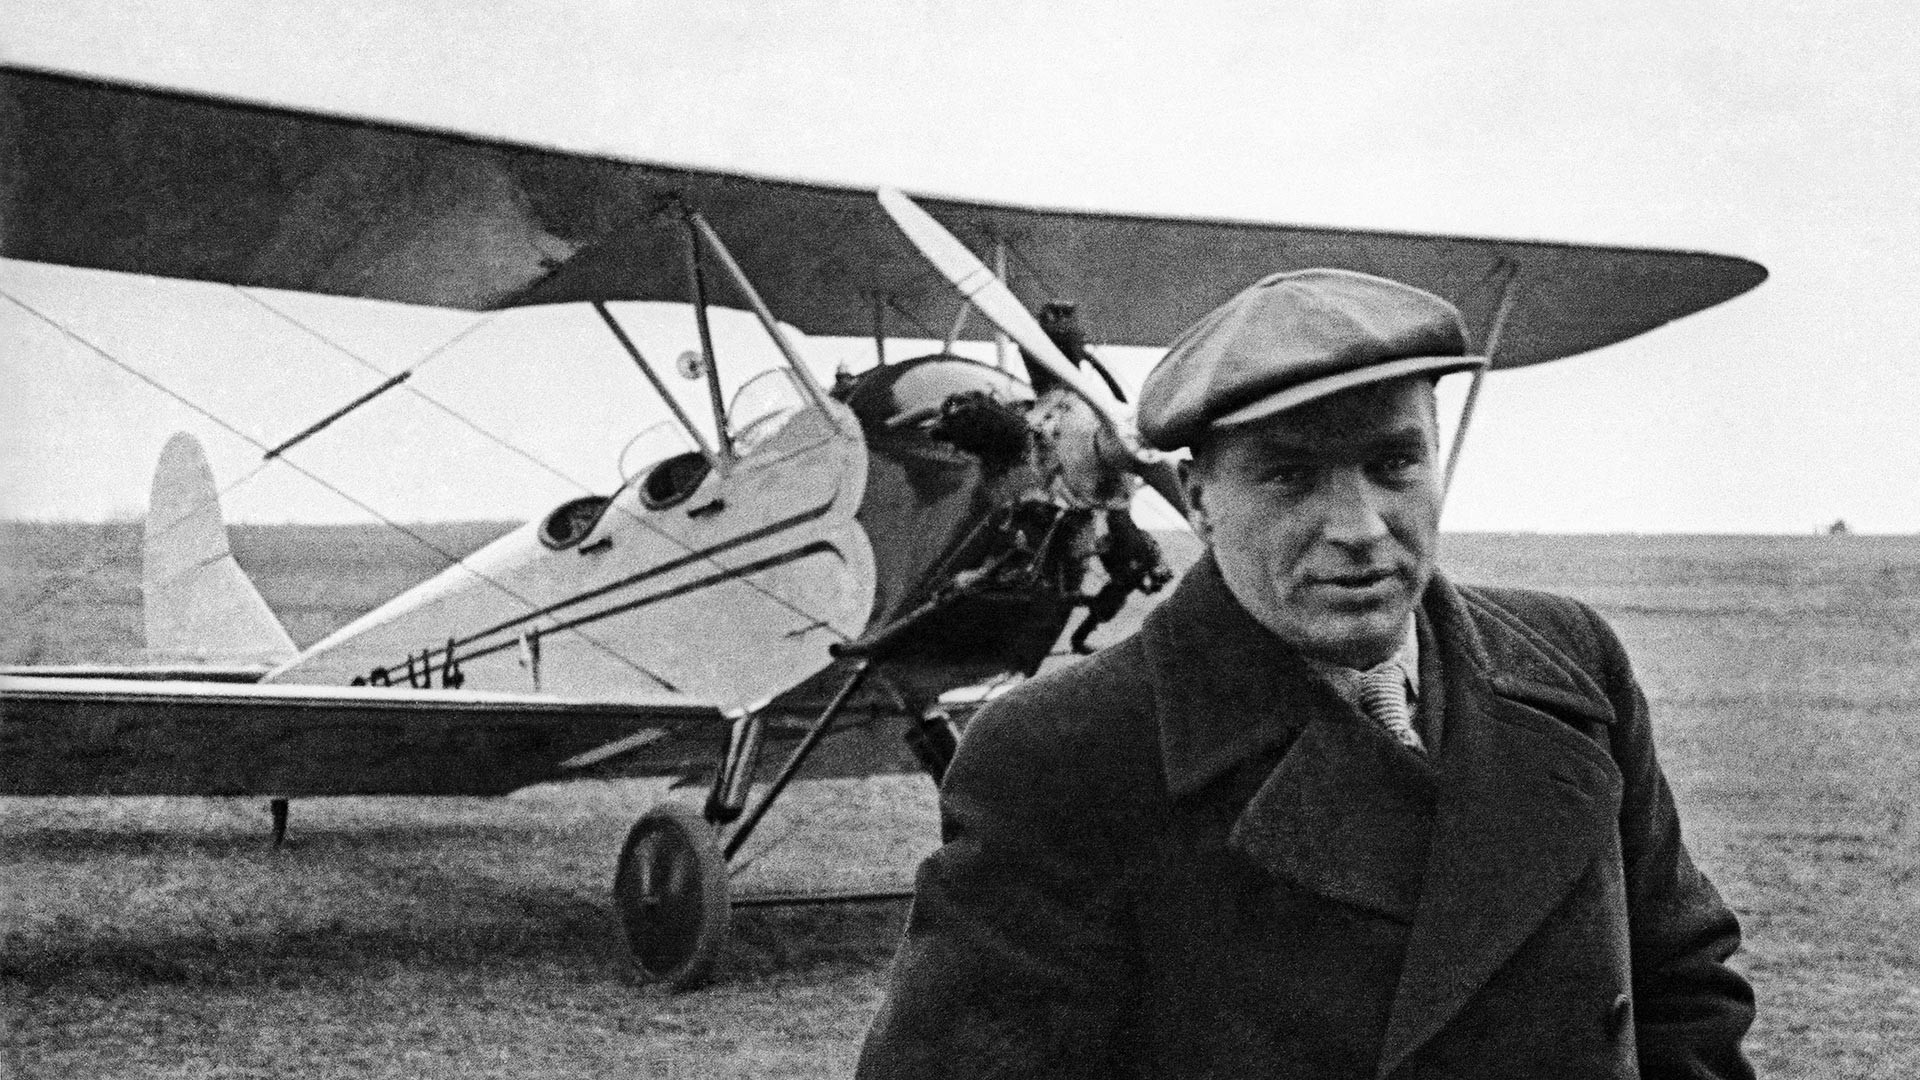 Chkálov junto a su avión personal Polikarpov Po-2.